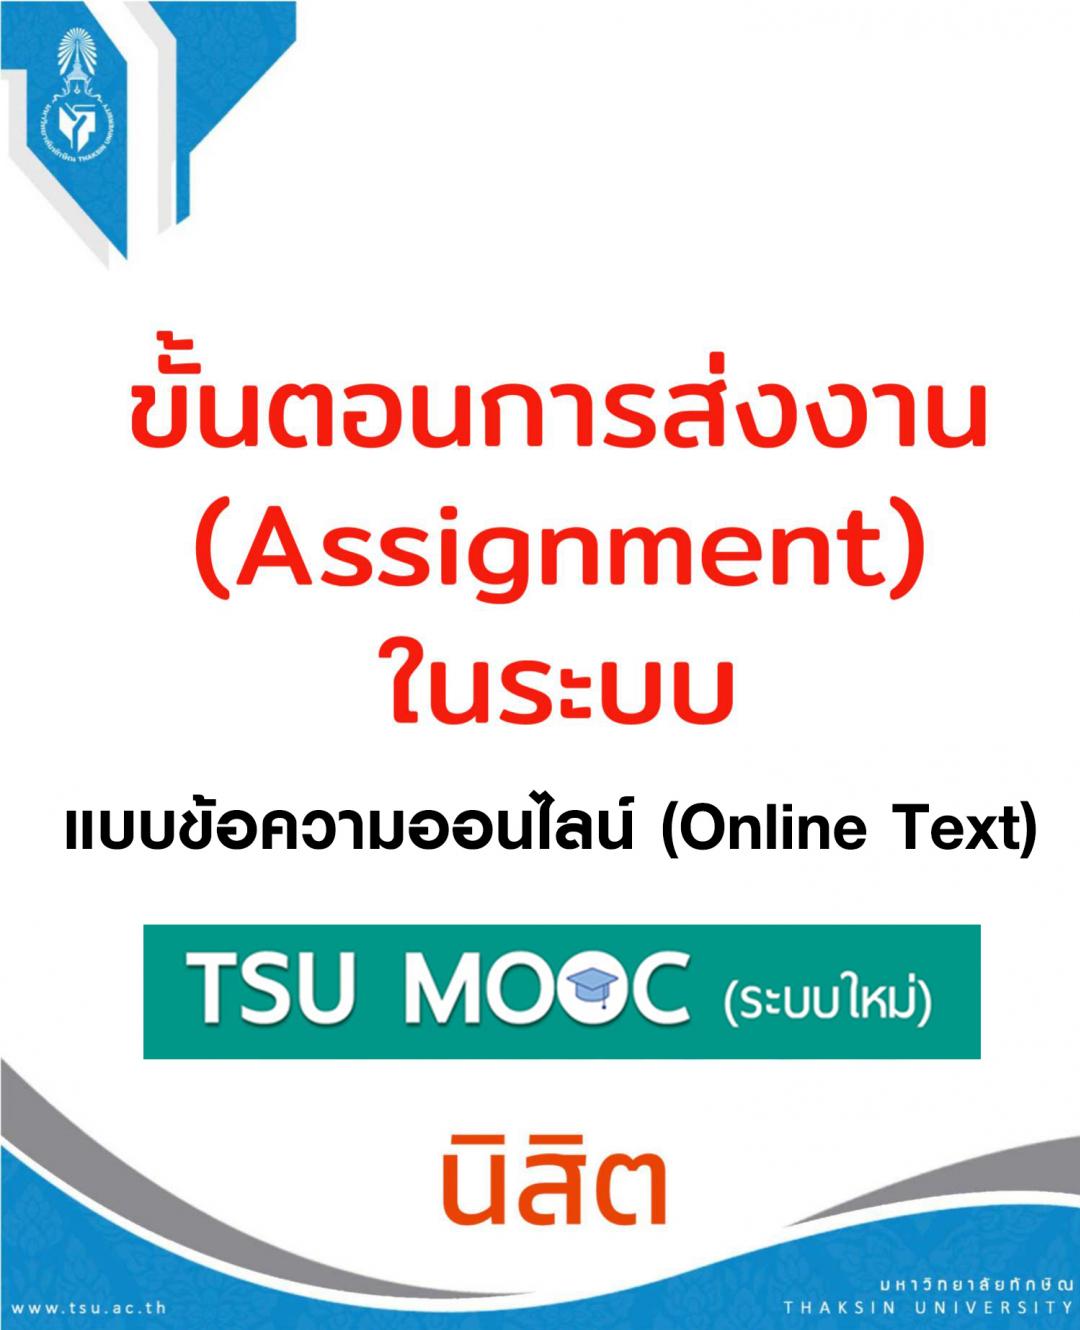 ขั้นตอนการส่งงานบนระบบ TSU MOOCs (ระบบใหม่) แบบข้อความออนไลน์ (Online Text)